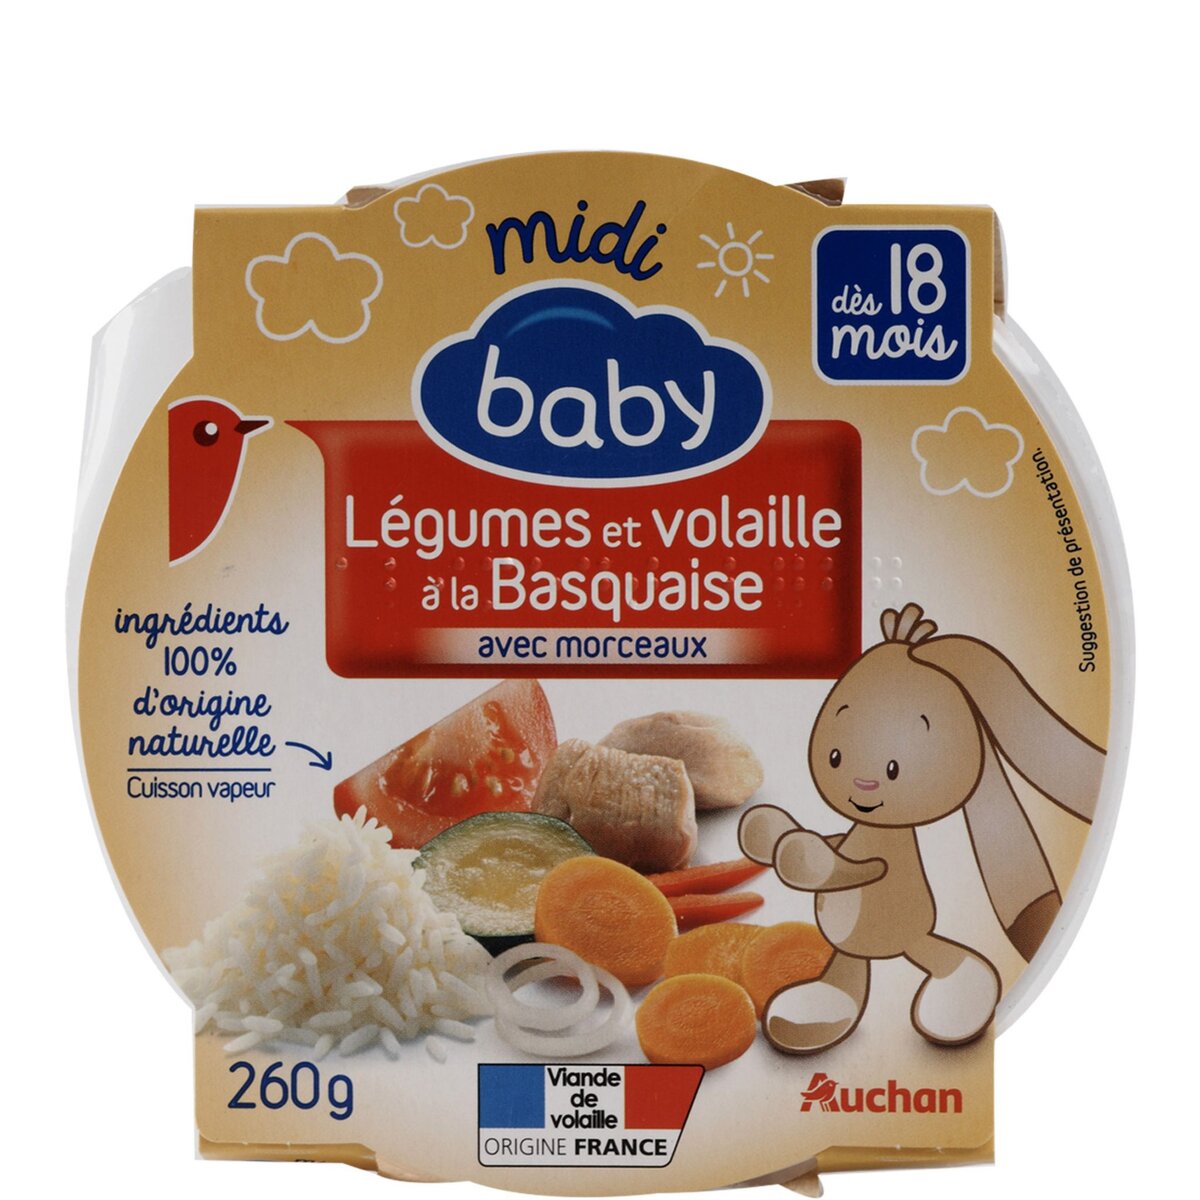 AUCHAN Auchan baby repas du midi légumes volaille 260g dès 18 mois